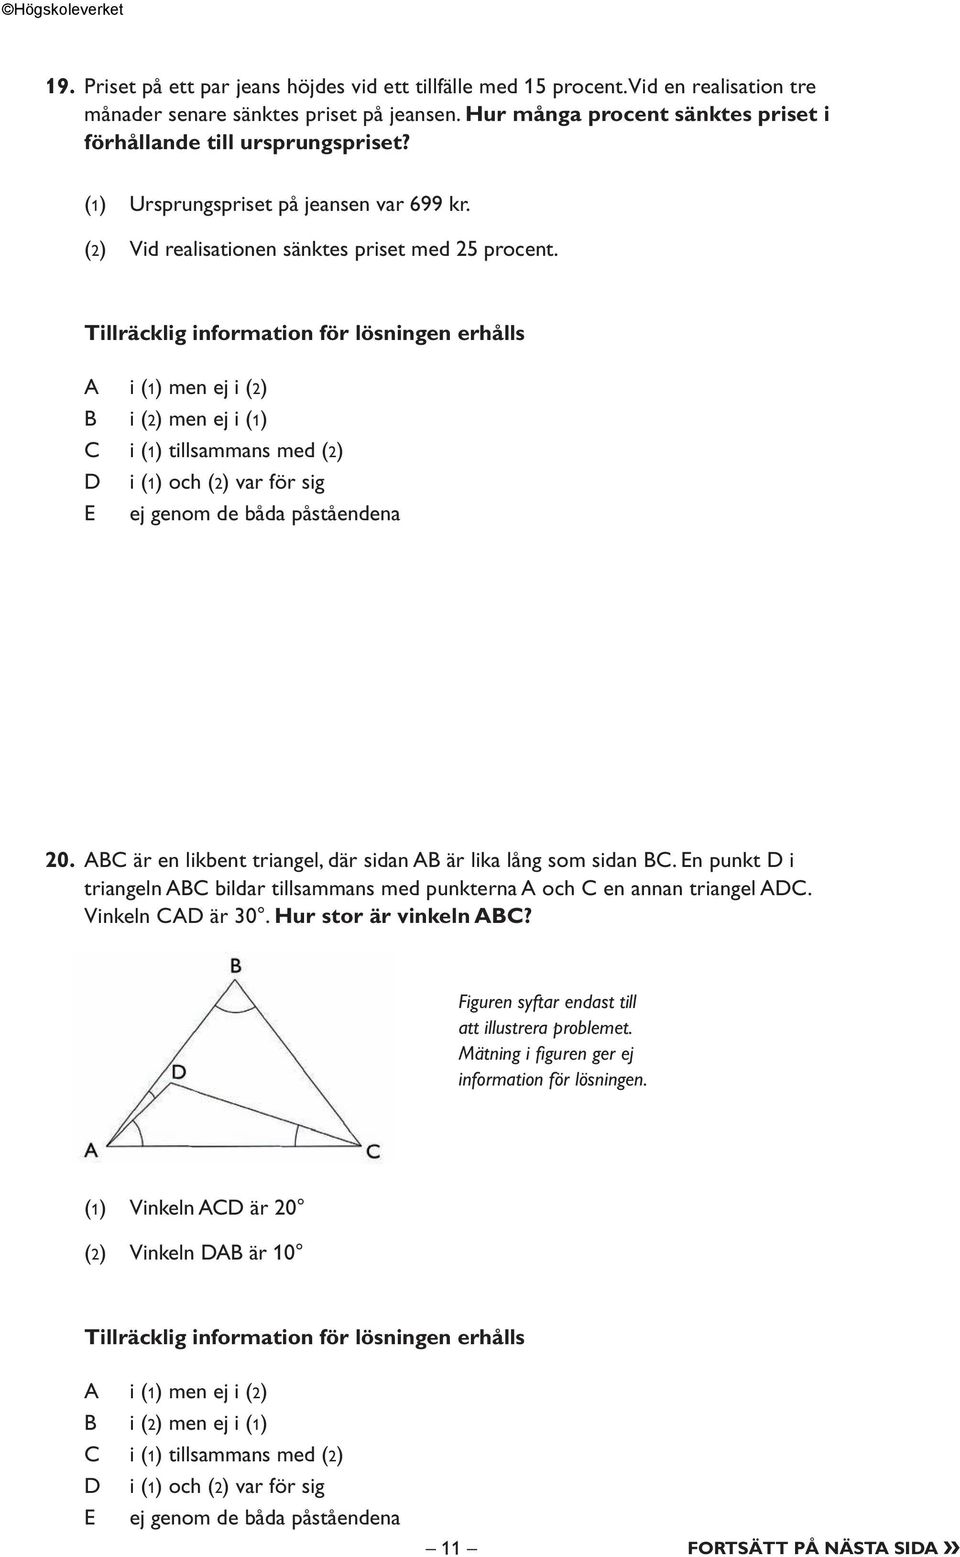 ABC är en likbent triangel, där sidan AB är lika lång som sidan BC. En punkt D i triangeln ABC bildar tillsammans med punkterna A och C en annan triangel ADC.